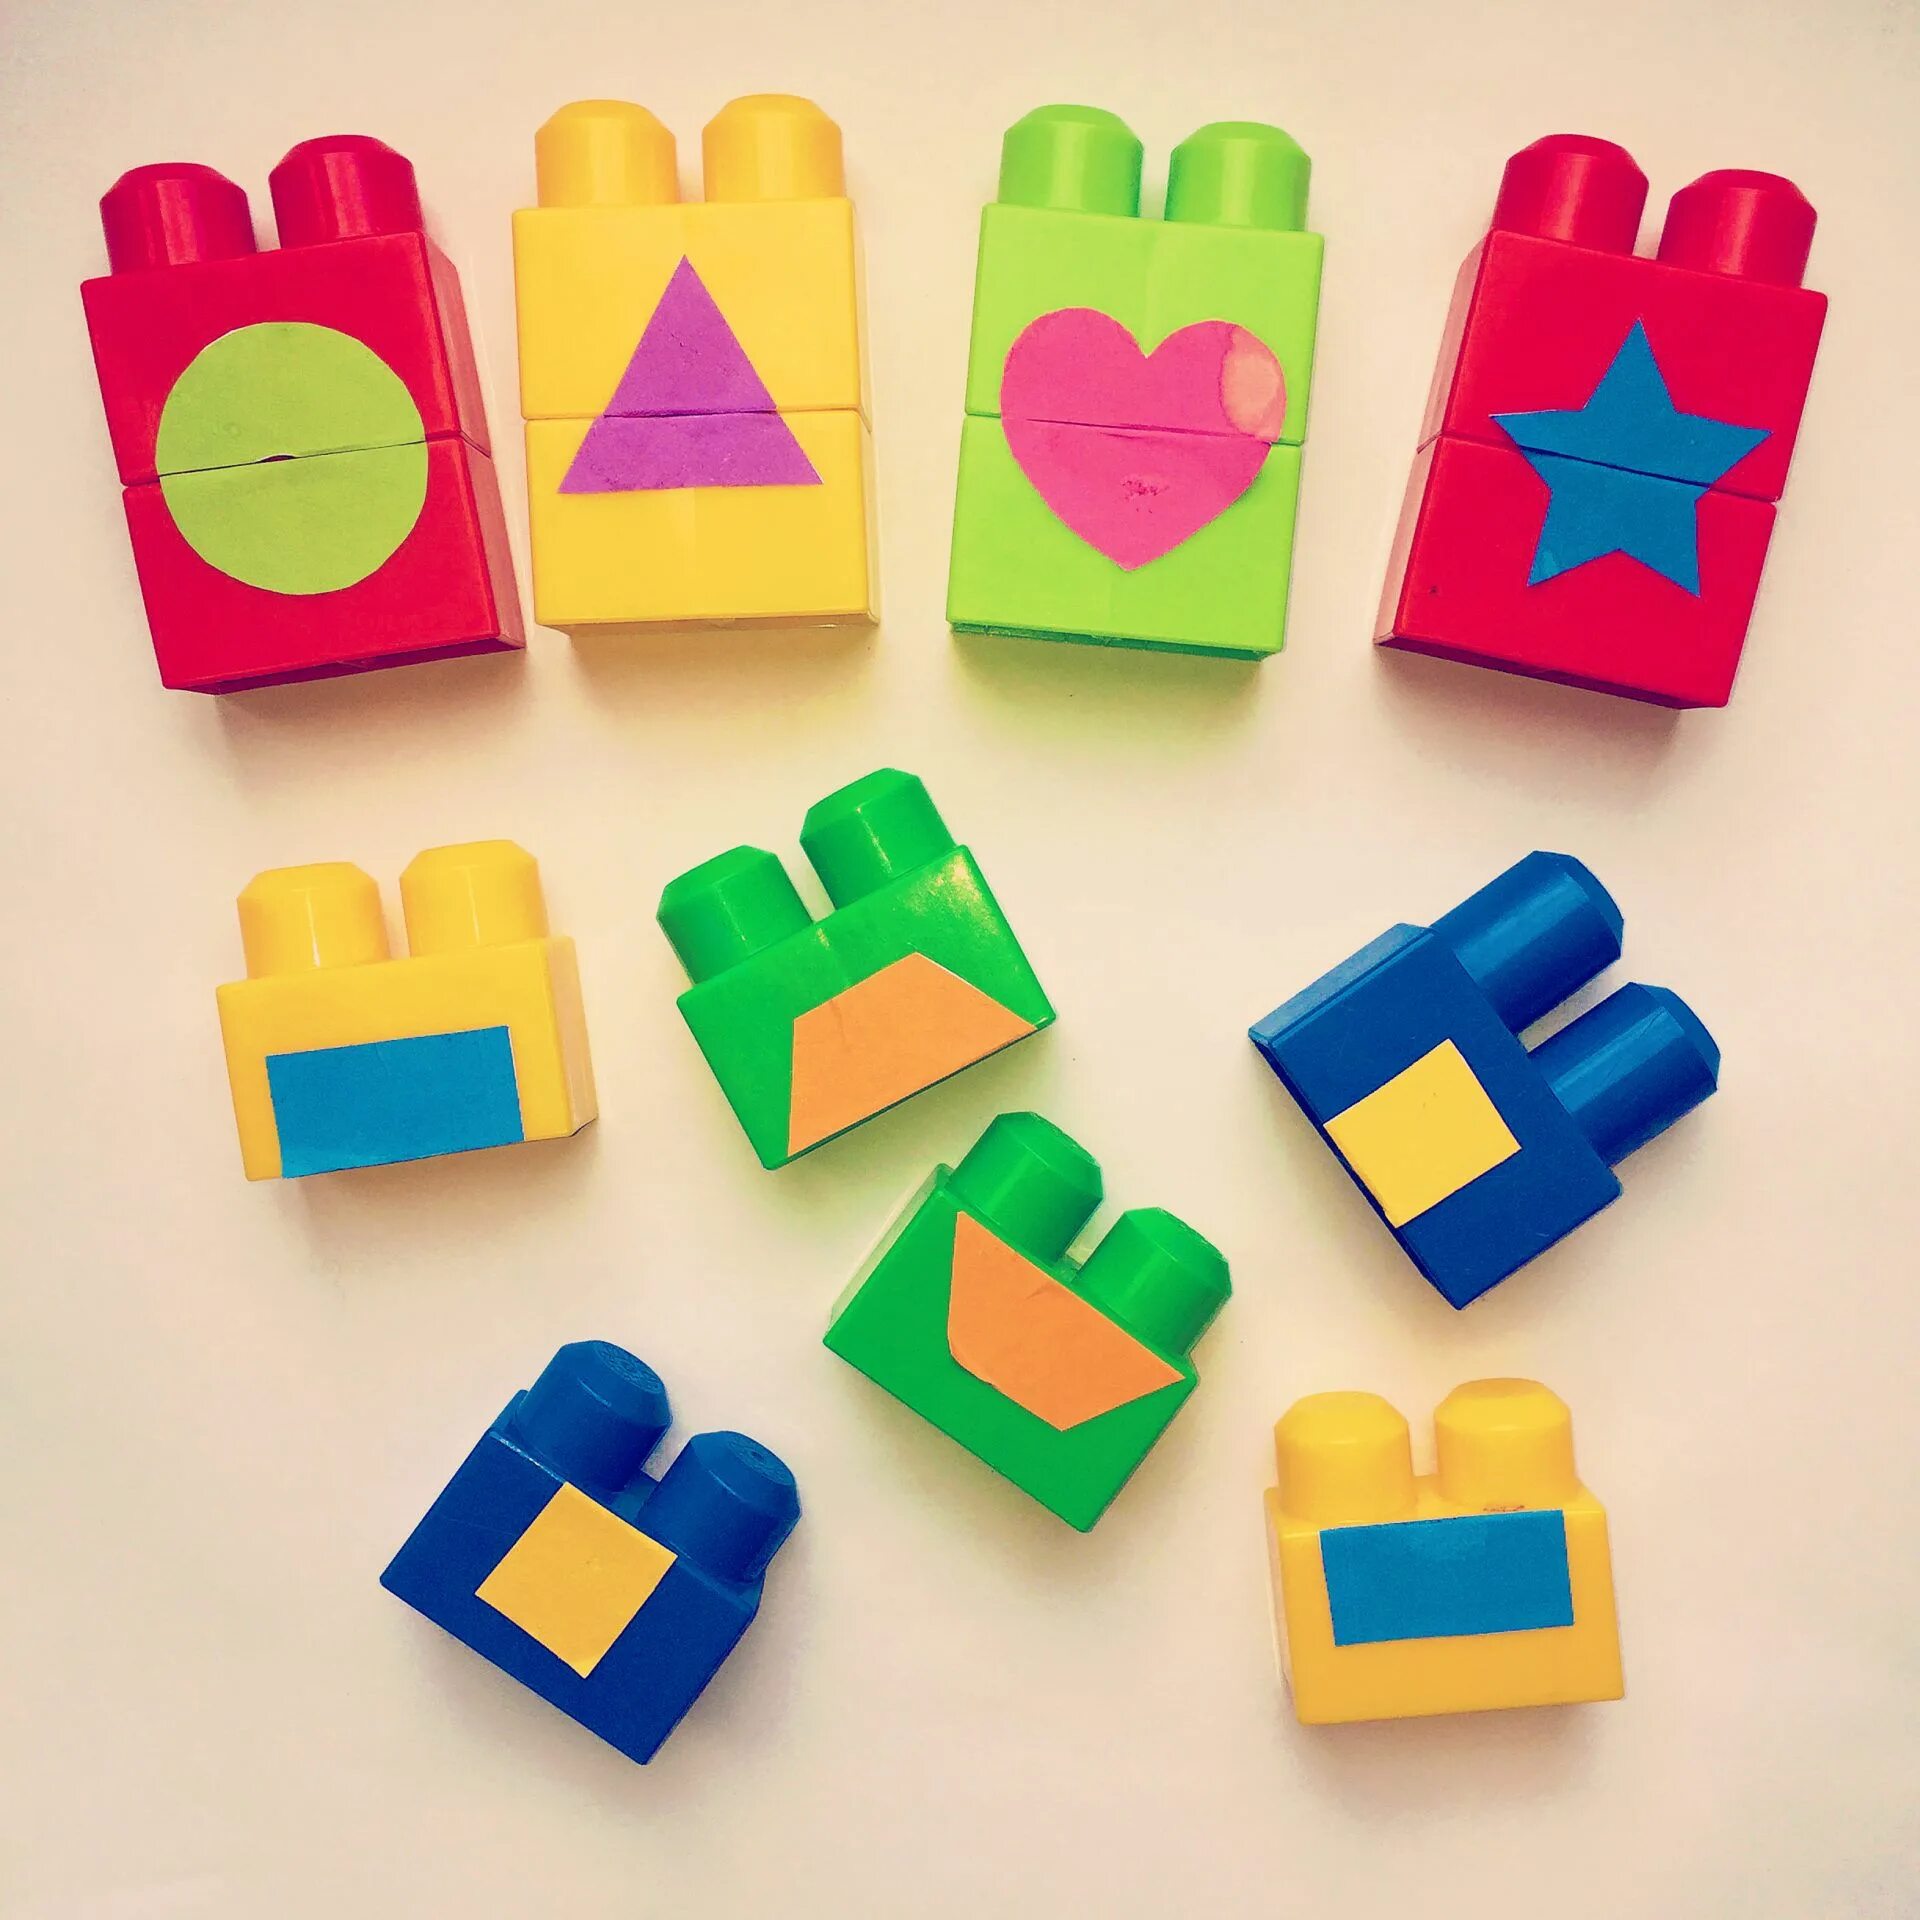 Shape matching. Формы для детского творчества. Разные игры для детей в формочки вставлять. Shapes Craft. Shape Blocks.